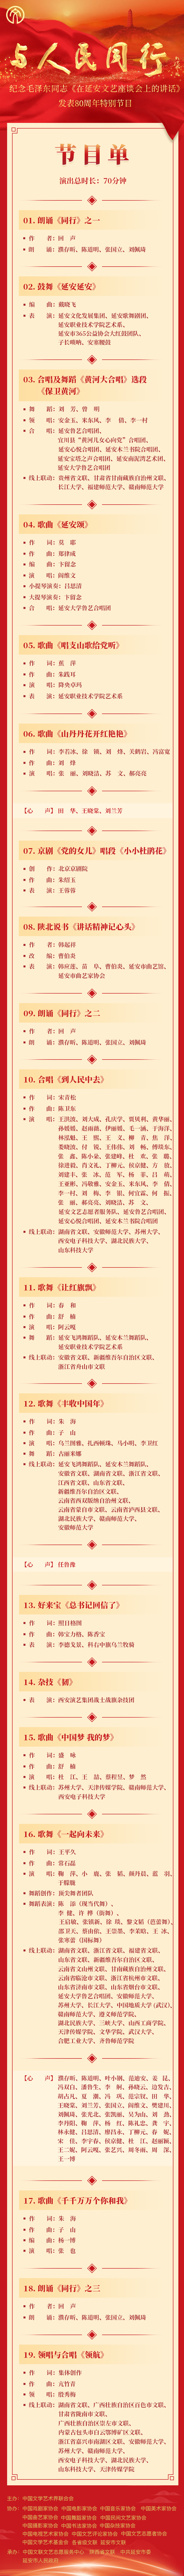 与人民同行——纪念毛泽东同志《在延安文艺座谈会上的讲话》发表80周年特别节目播出